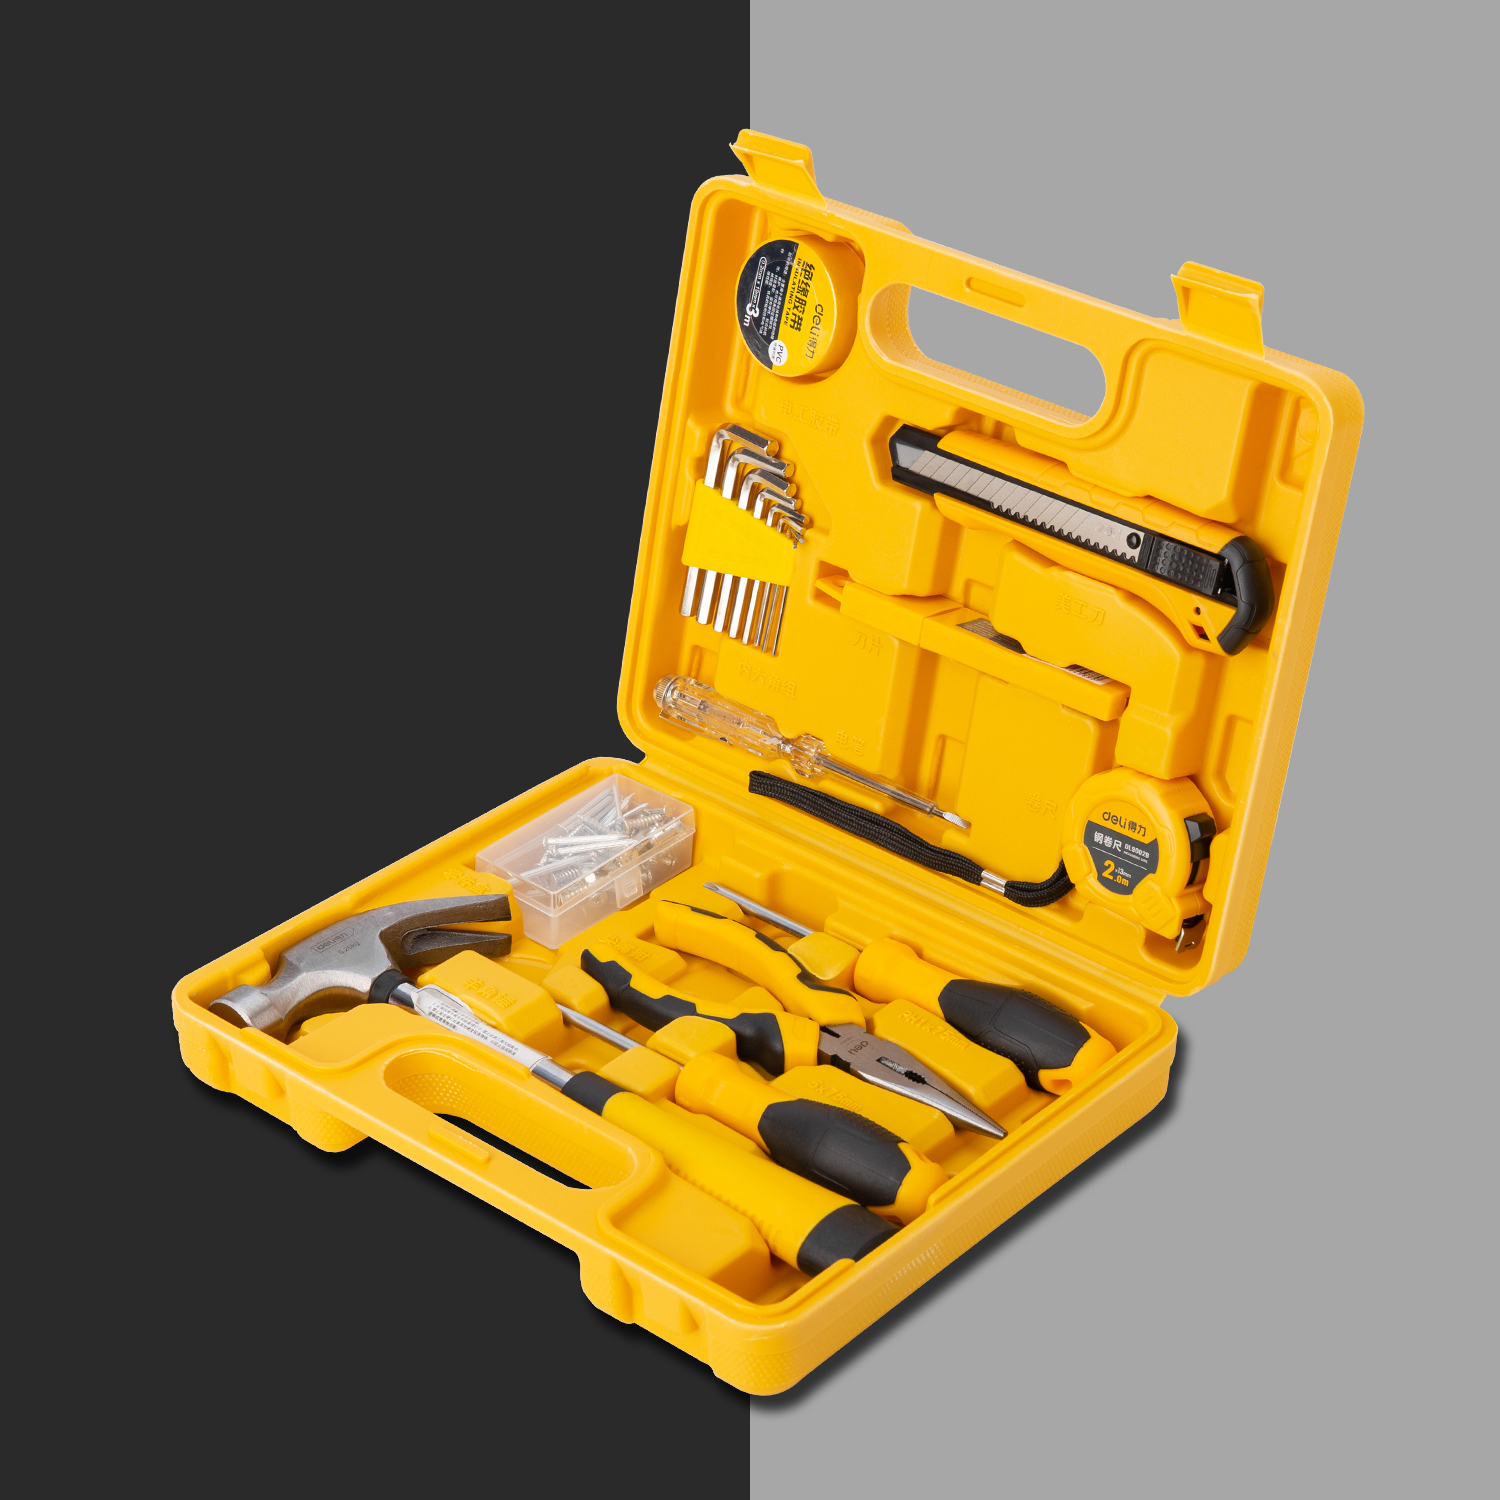 Household Tool Kits